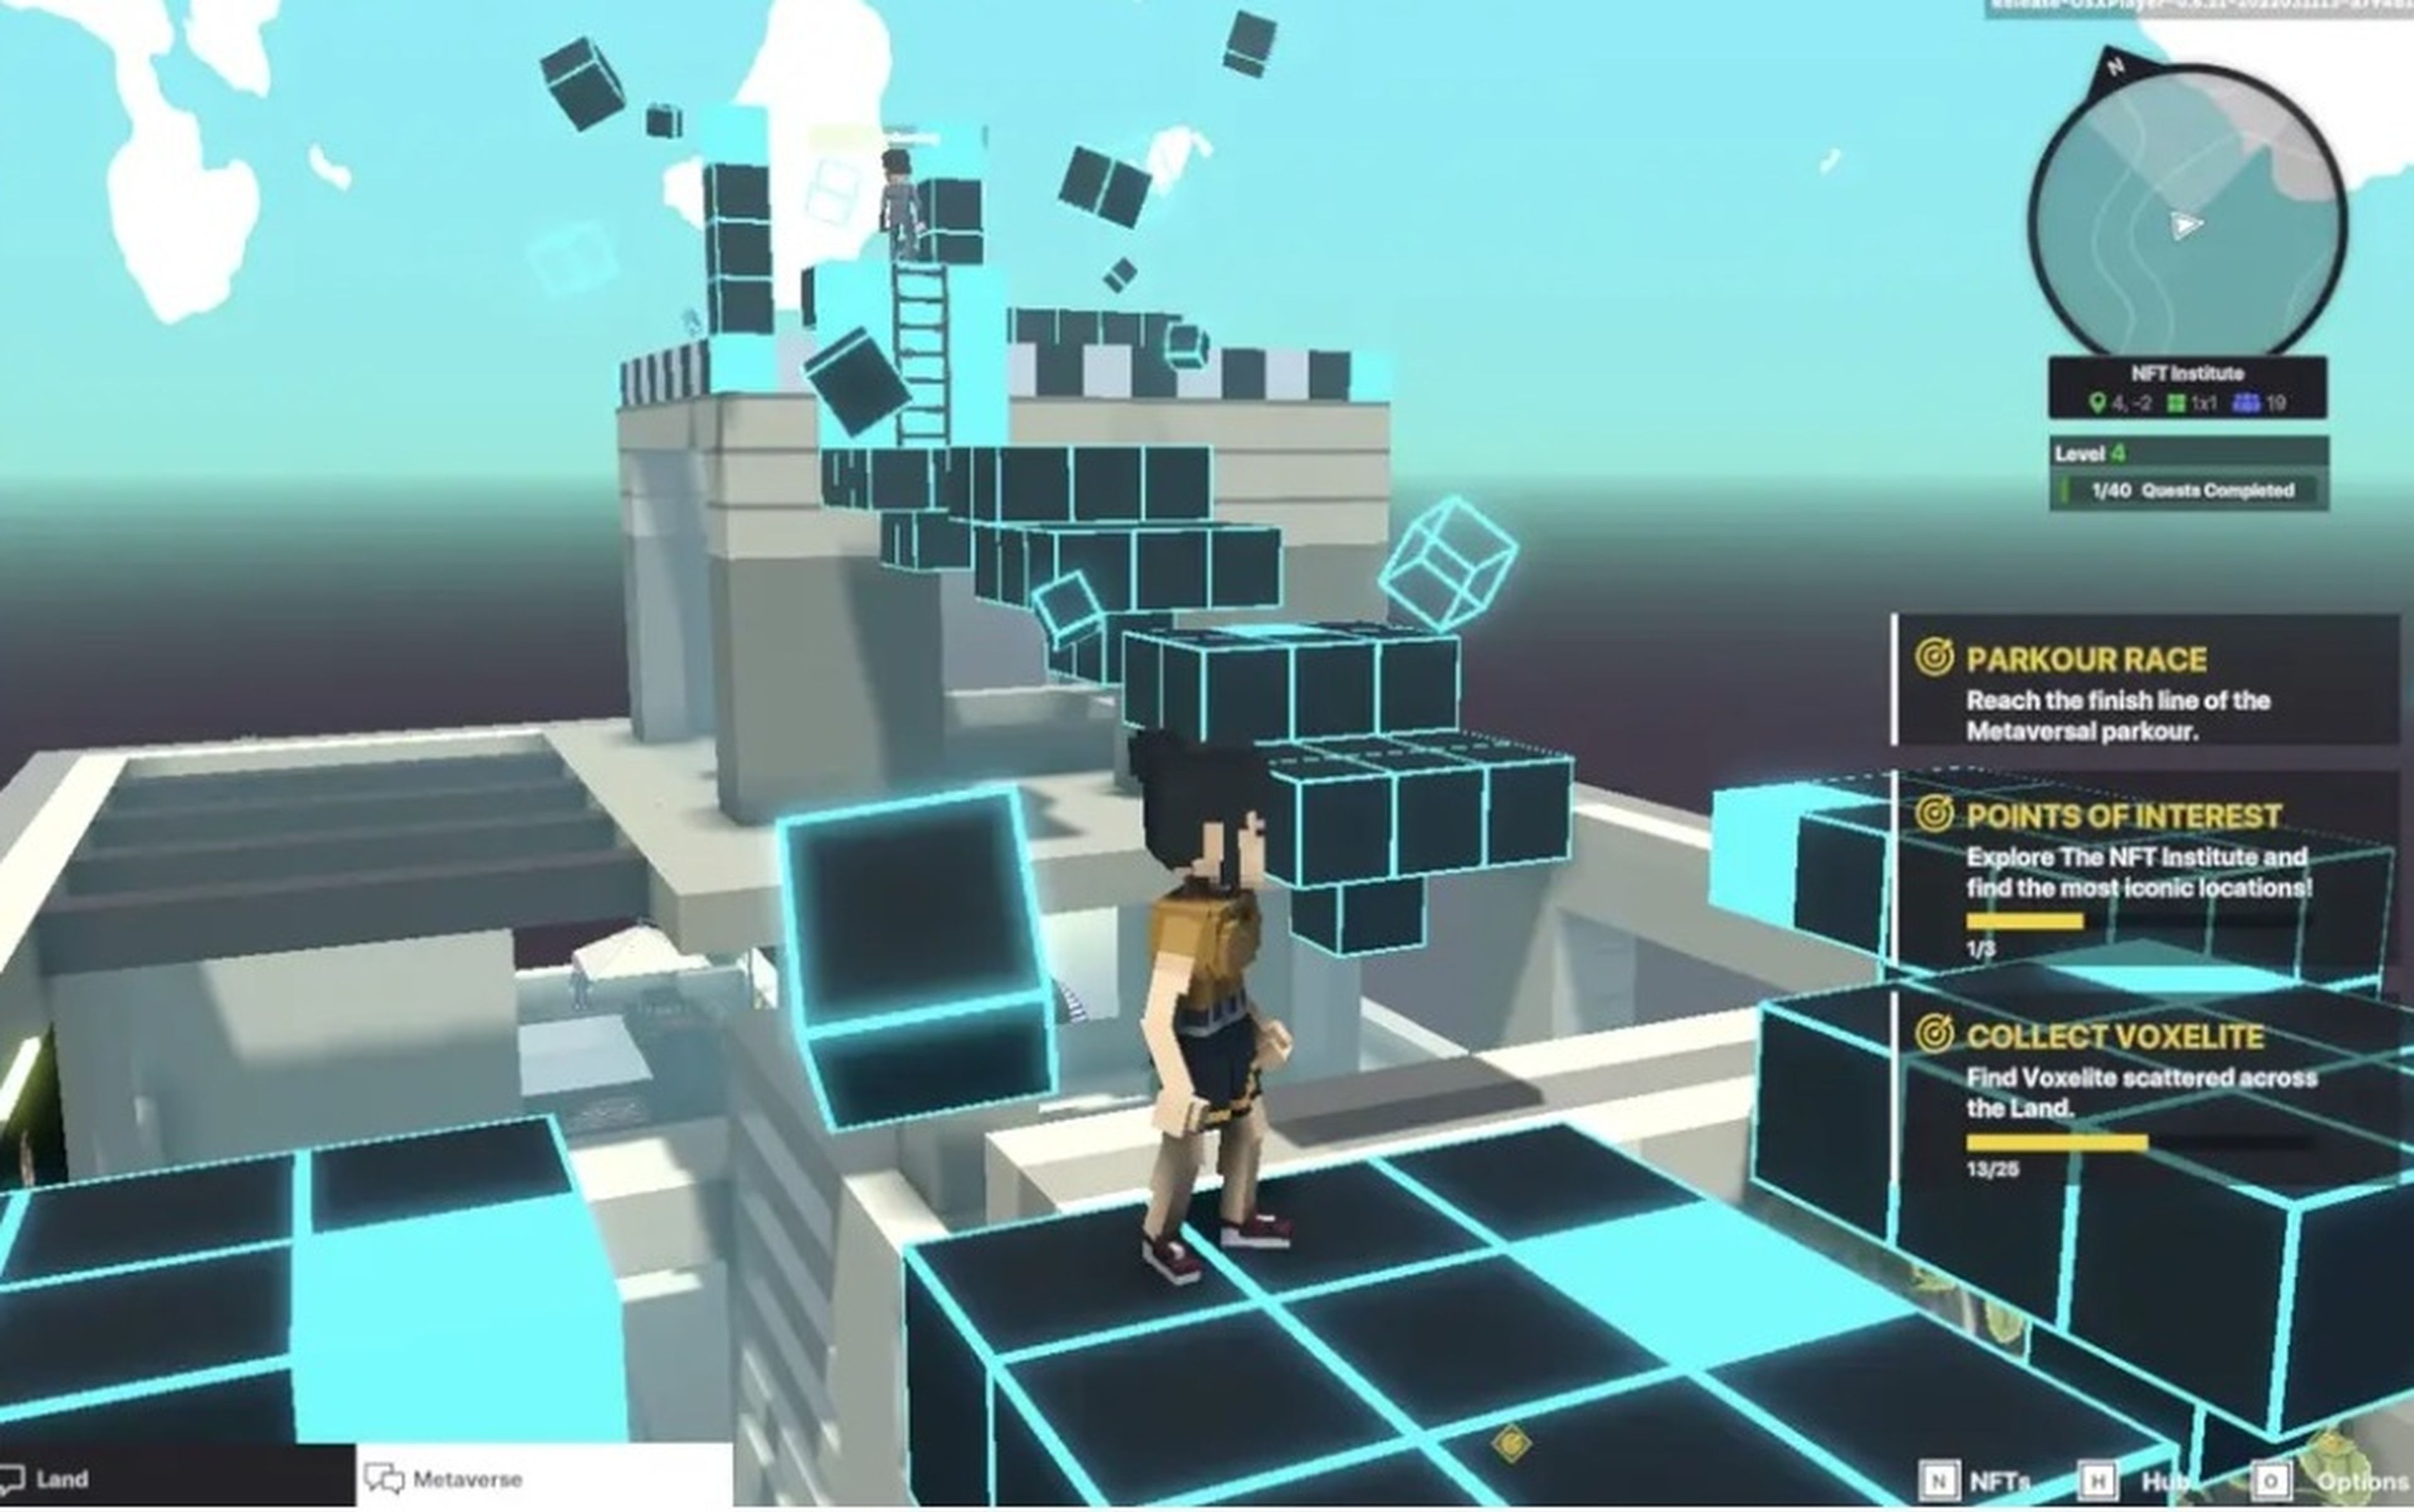 Muchos mundos multijugador animarán a los jugadores a explorar el paisaje ofreciéndoles misiones como el parkour, la búsqueda de "puntos de interés" y la recogida de cubos azules brillantes de "voxelita".